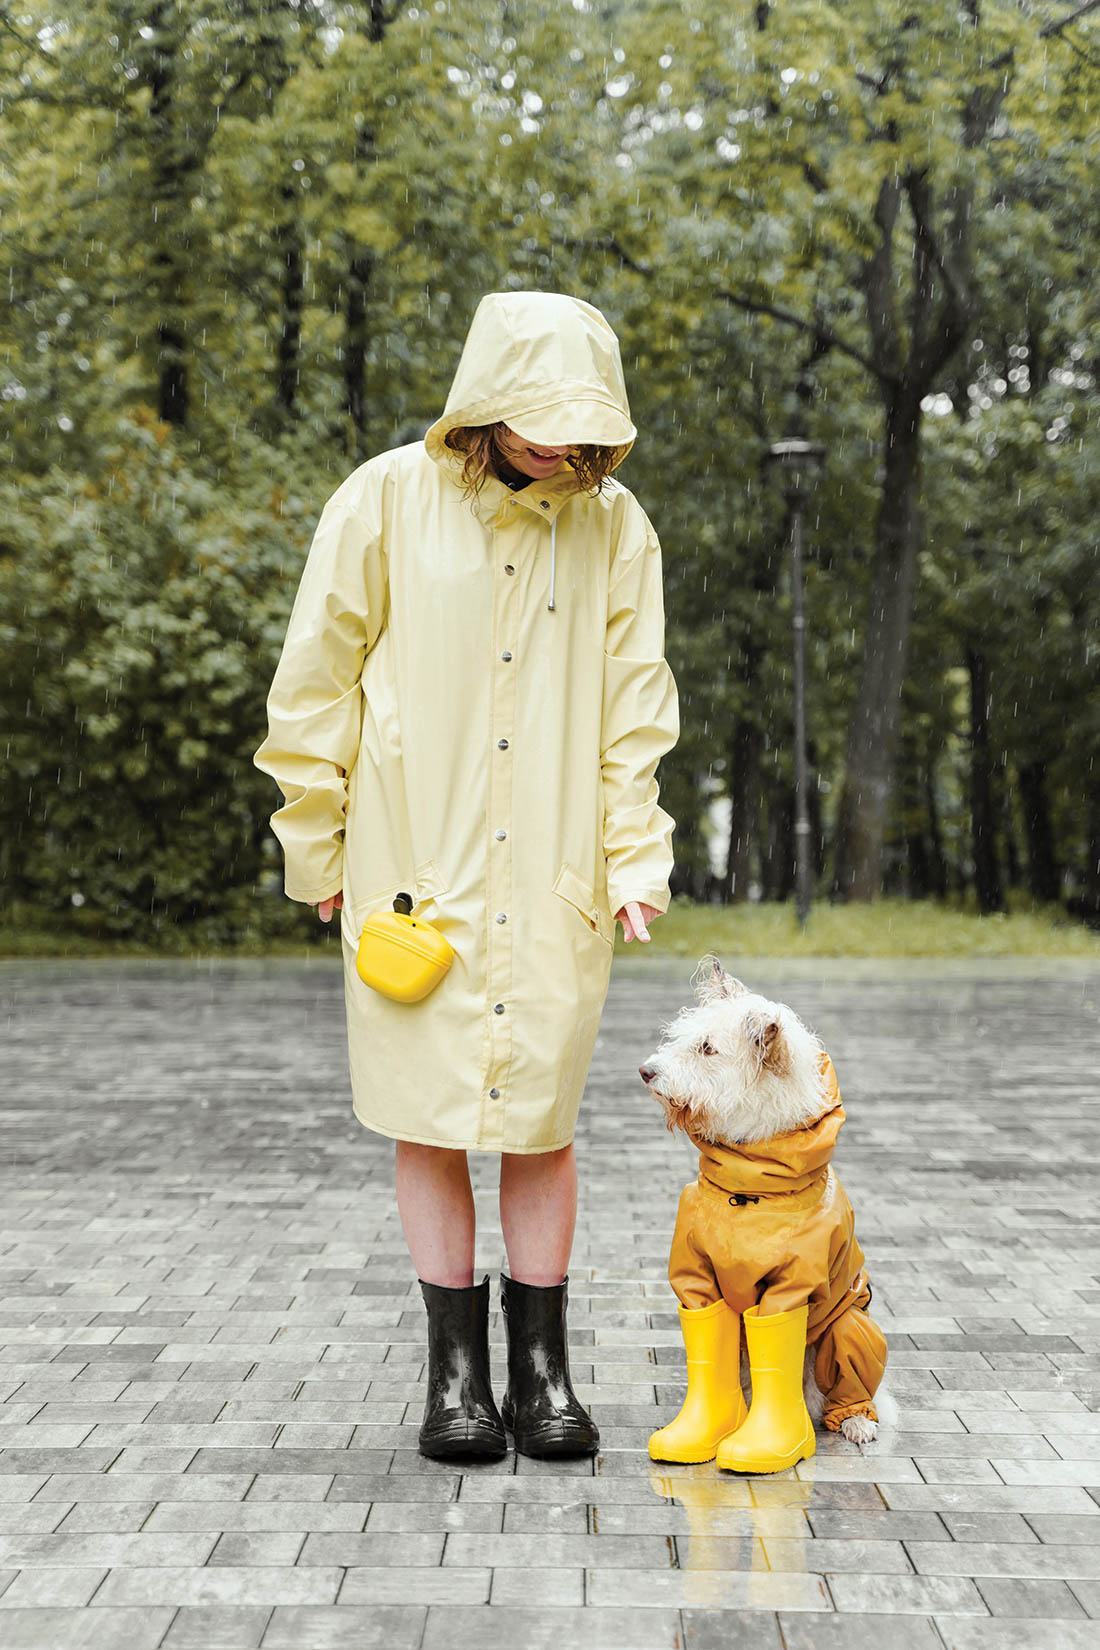 Dog in rain.